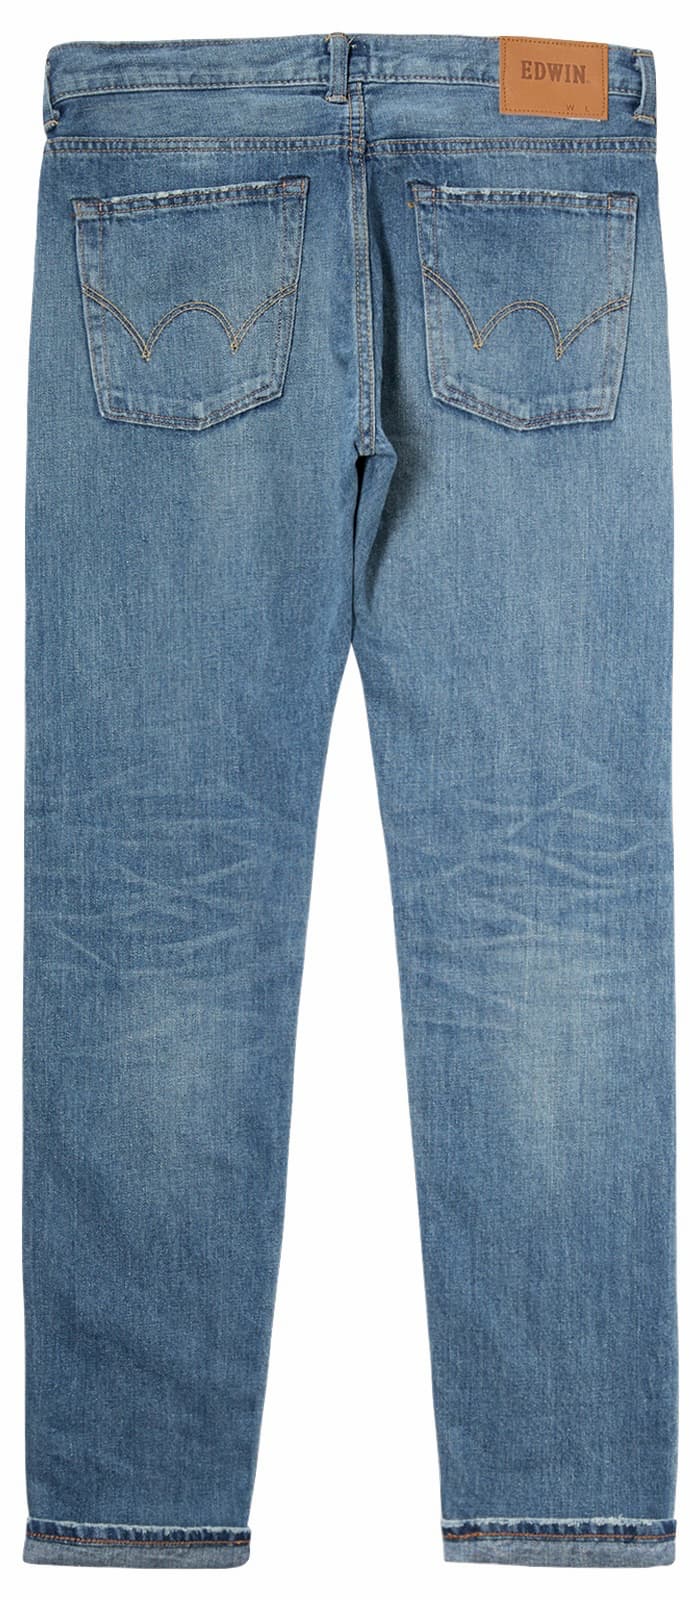 edwin jeans 1980s